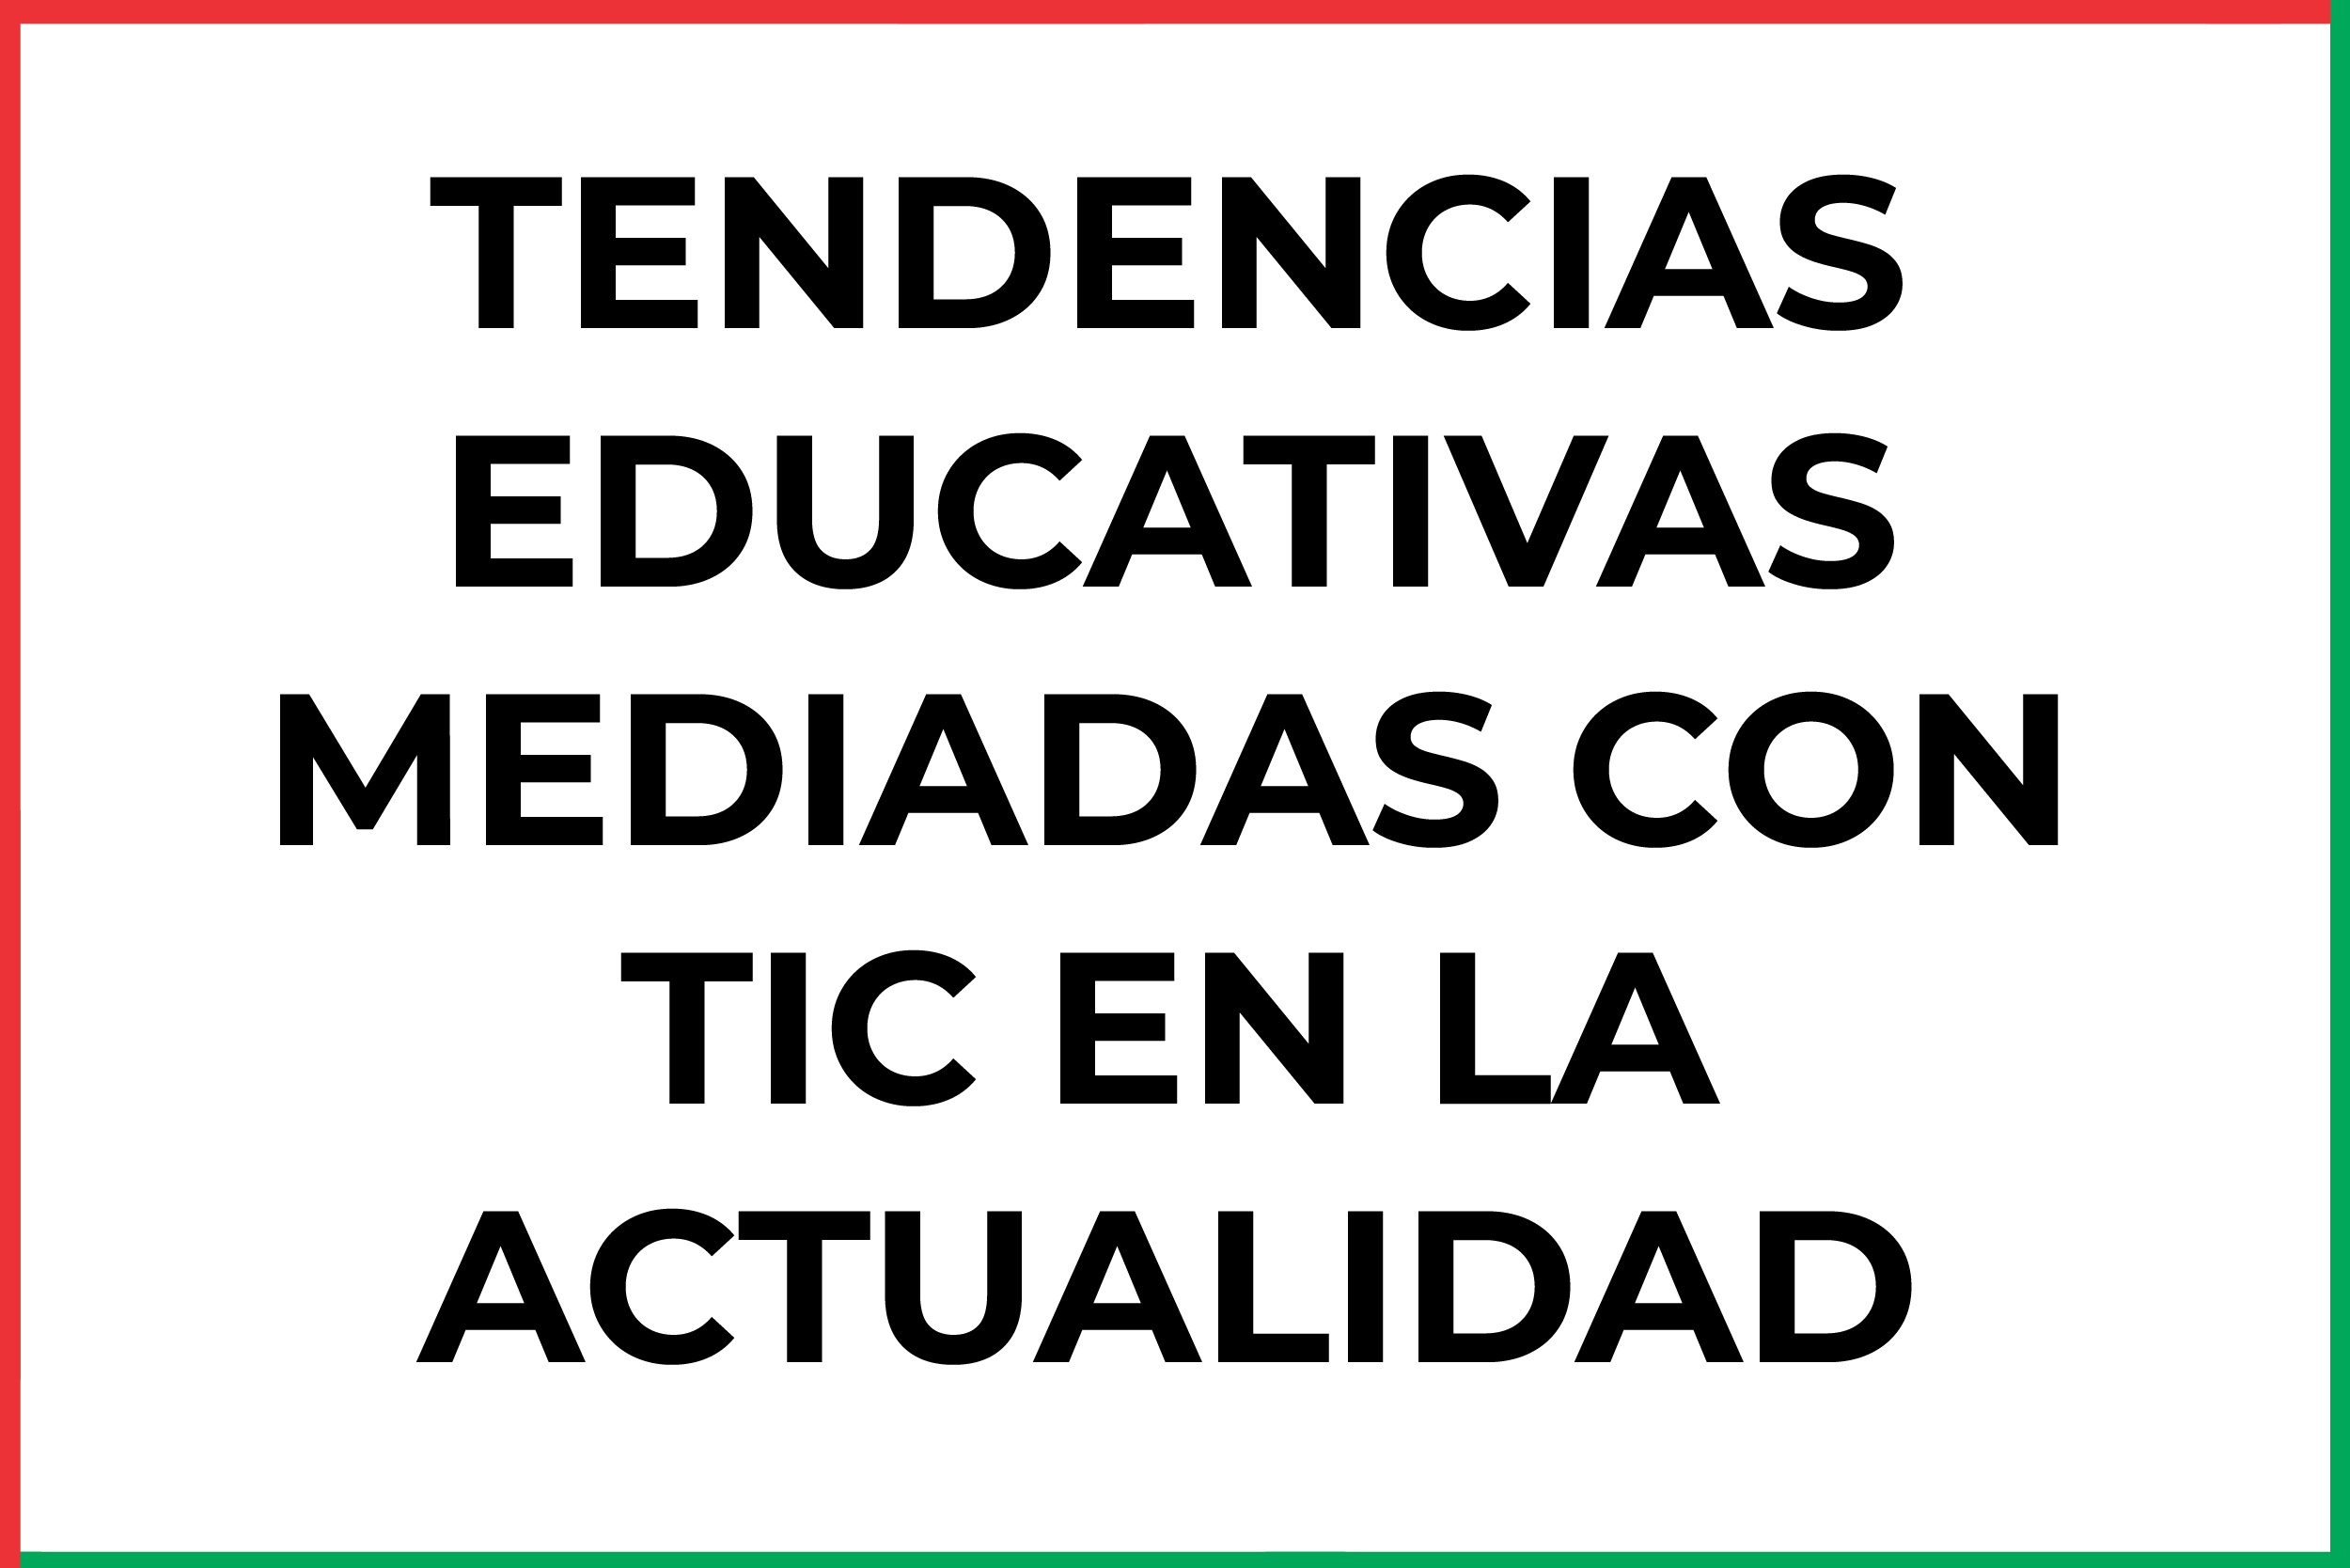 TENDENCIAS EDUCATIVAS MEDIADAS CON TIC EN LA ACTUALIDAD